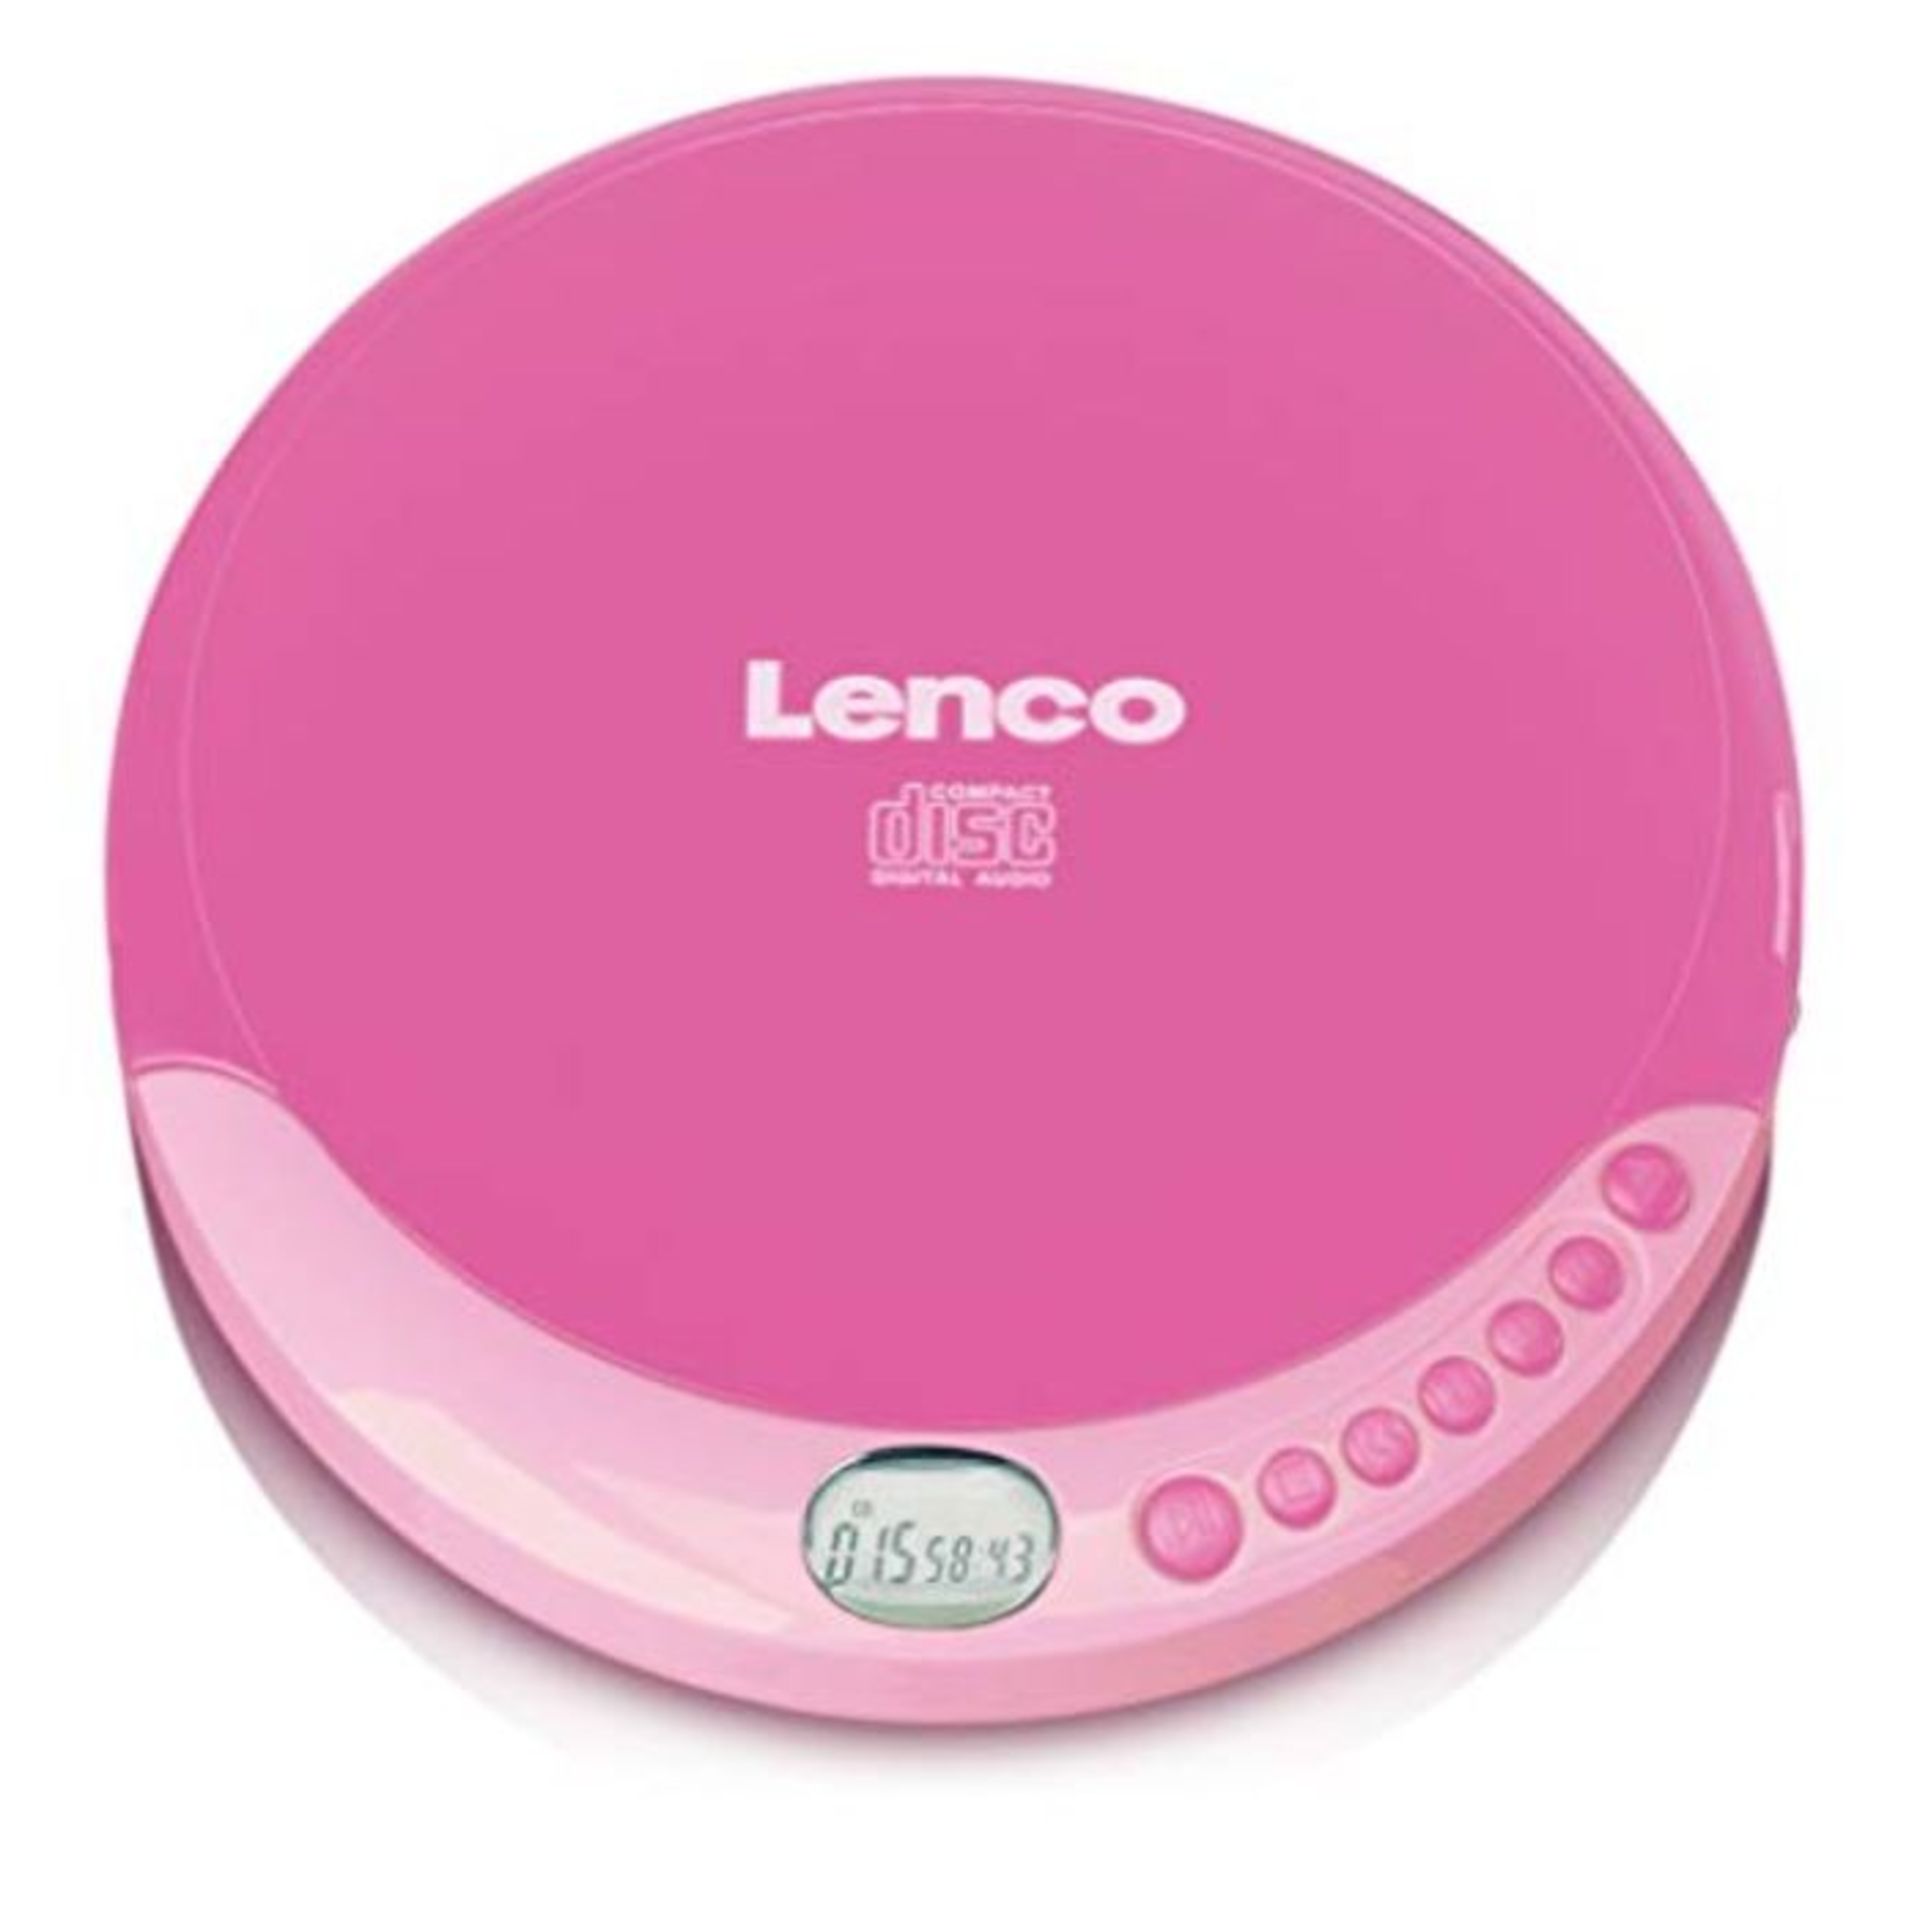 Lenco CD-011 - Portable CD Player Walkman - Diskman - CD Walkman - with Headphones and